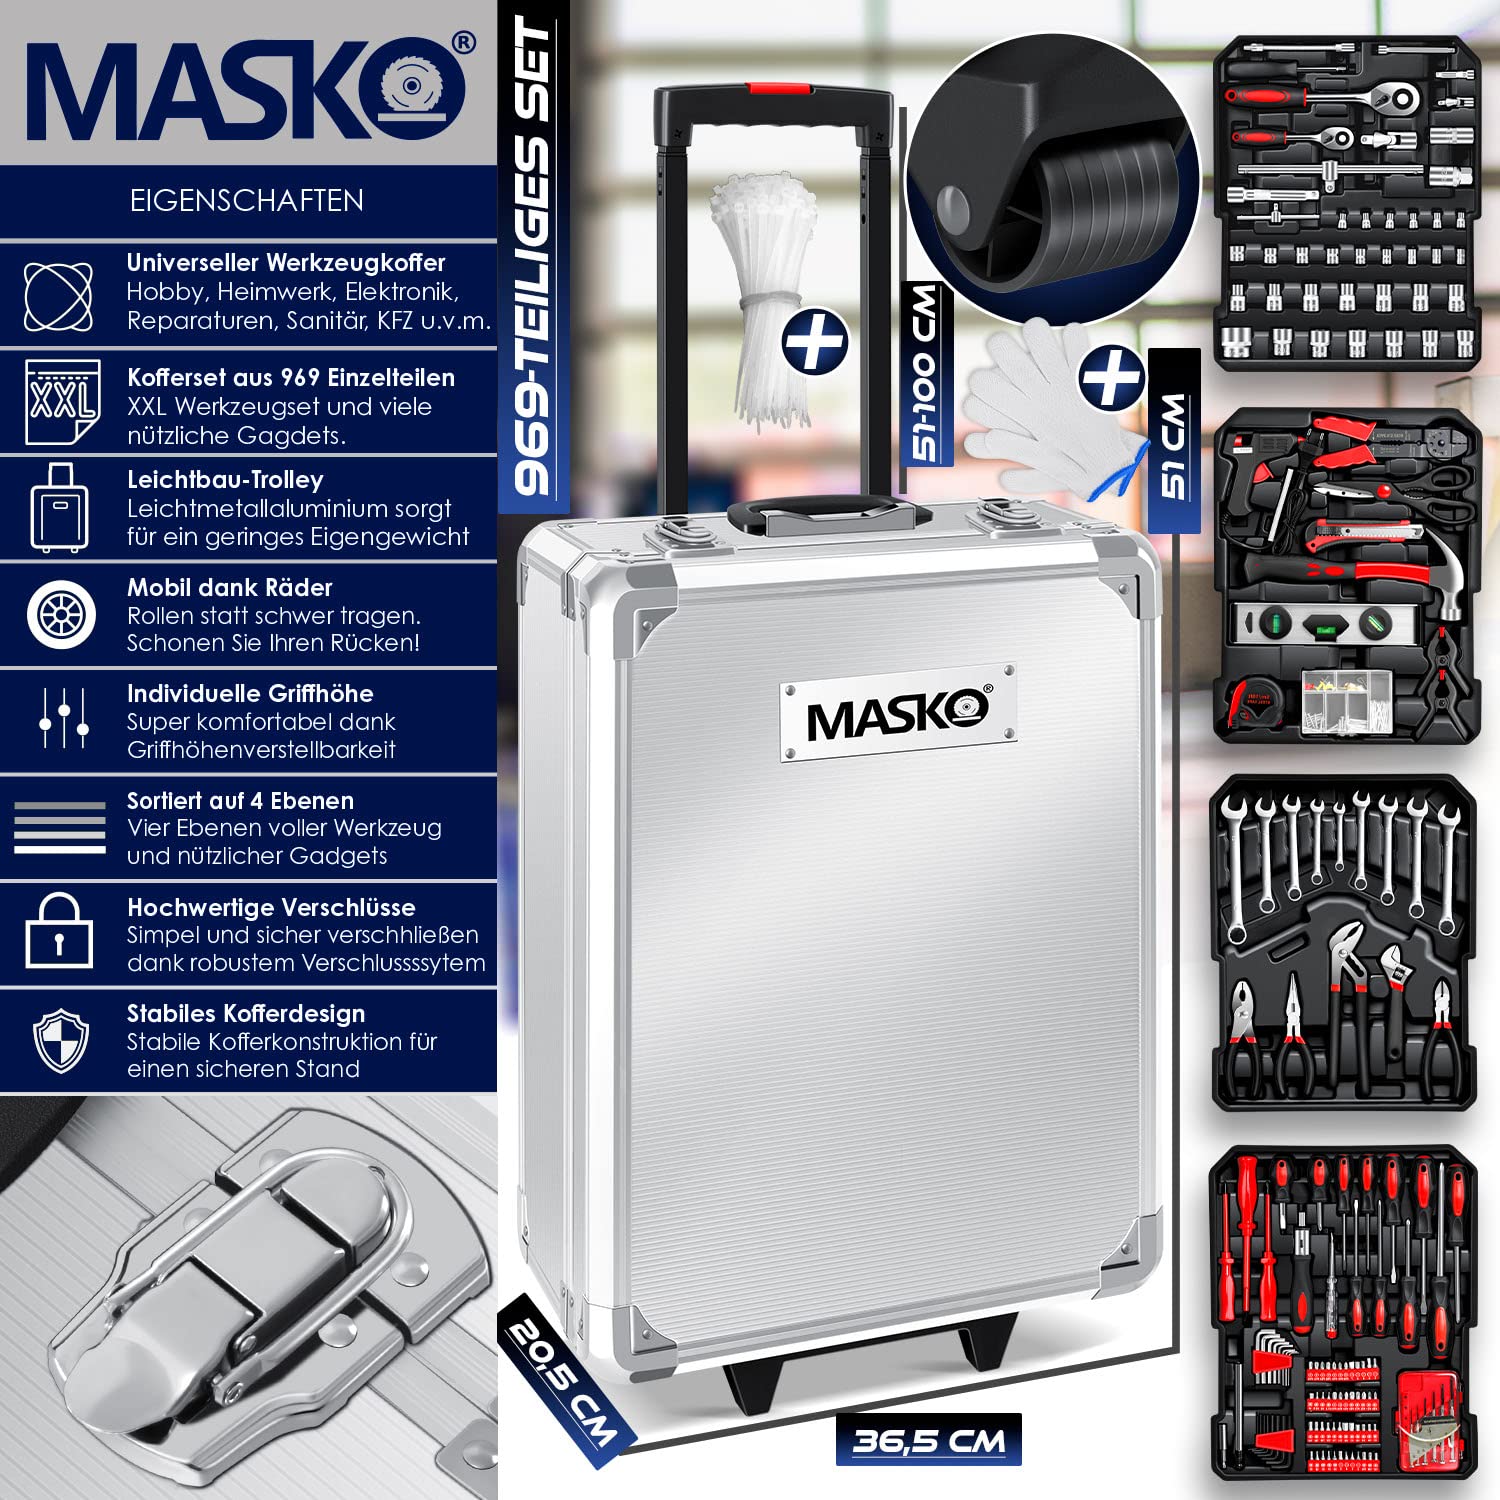 Masko® - Cassetta degli attrezzi, 969 pezzi, trolley professionale, argento